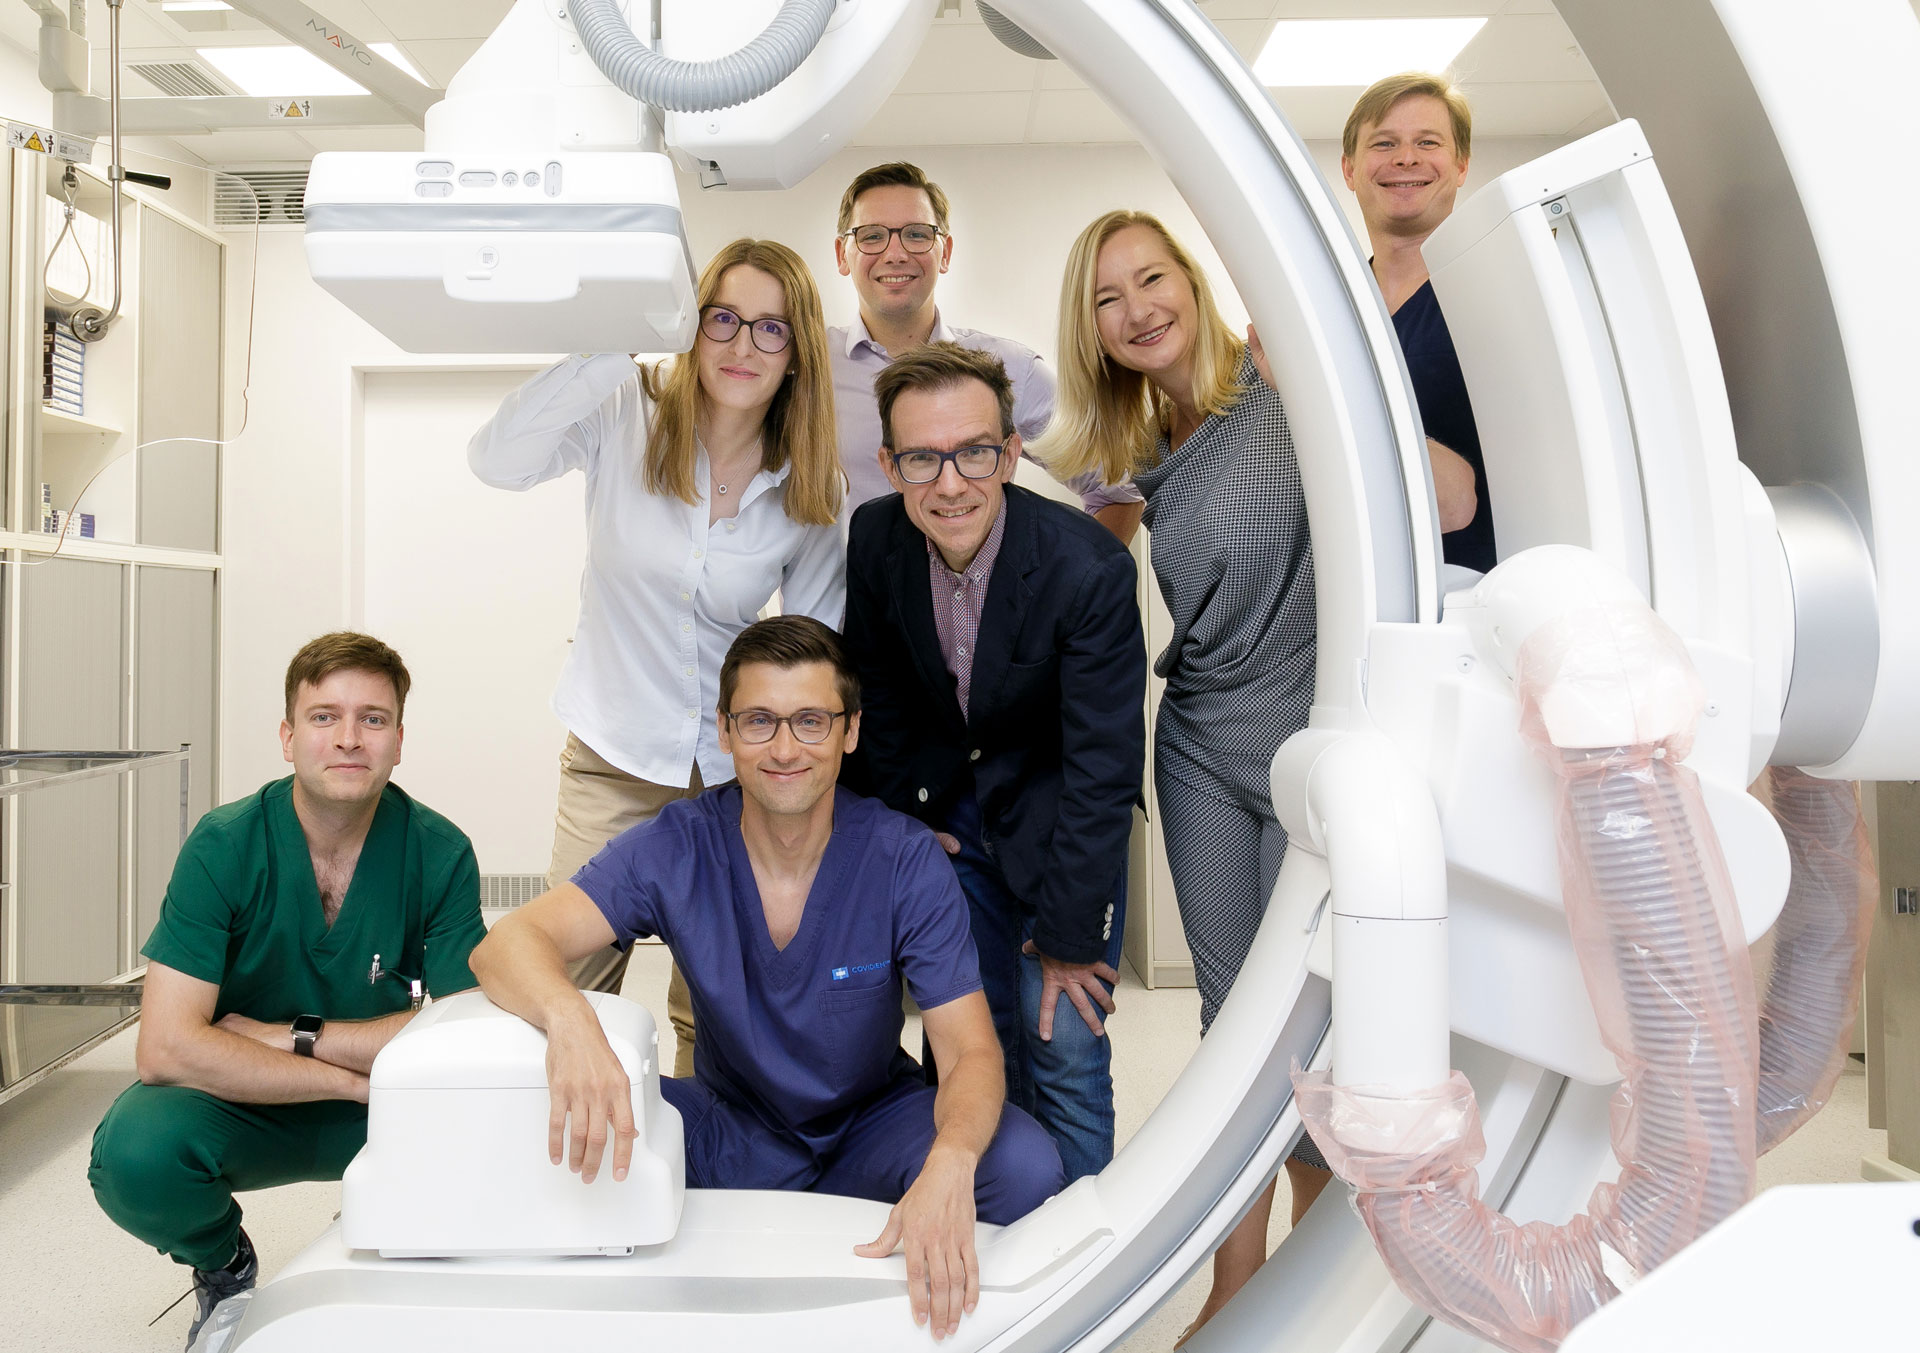 Grupa osób ubranych w stroje medyczne pozuje do zdjęcia w pomieszczeniu medycznym, przy rezonansie magnetycznym